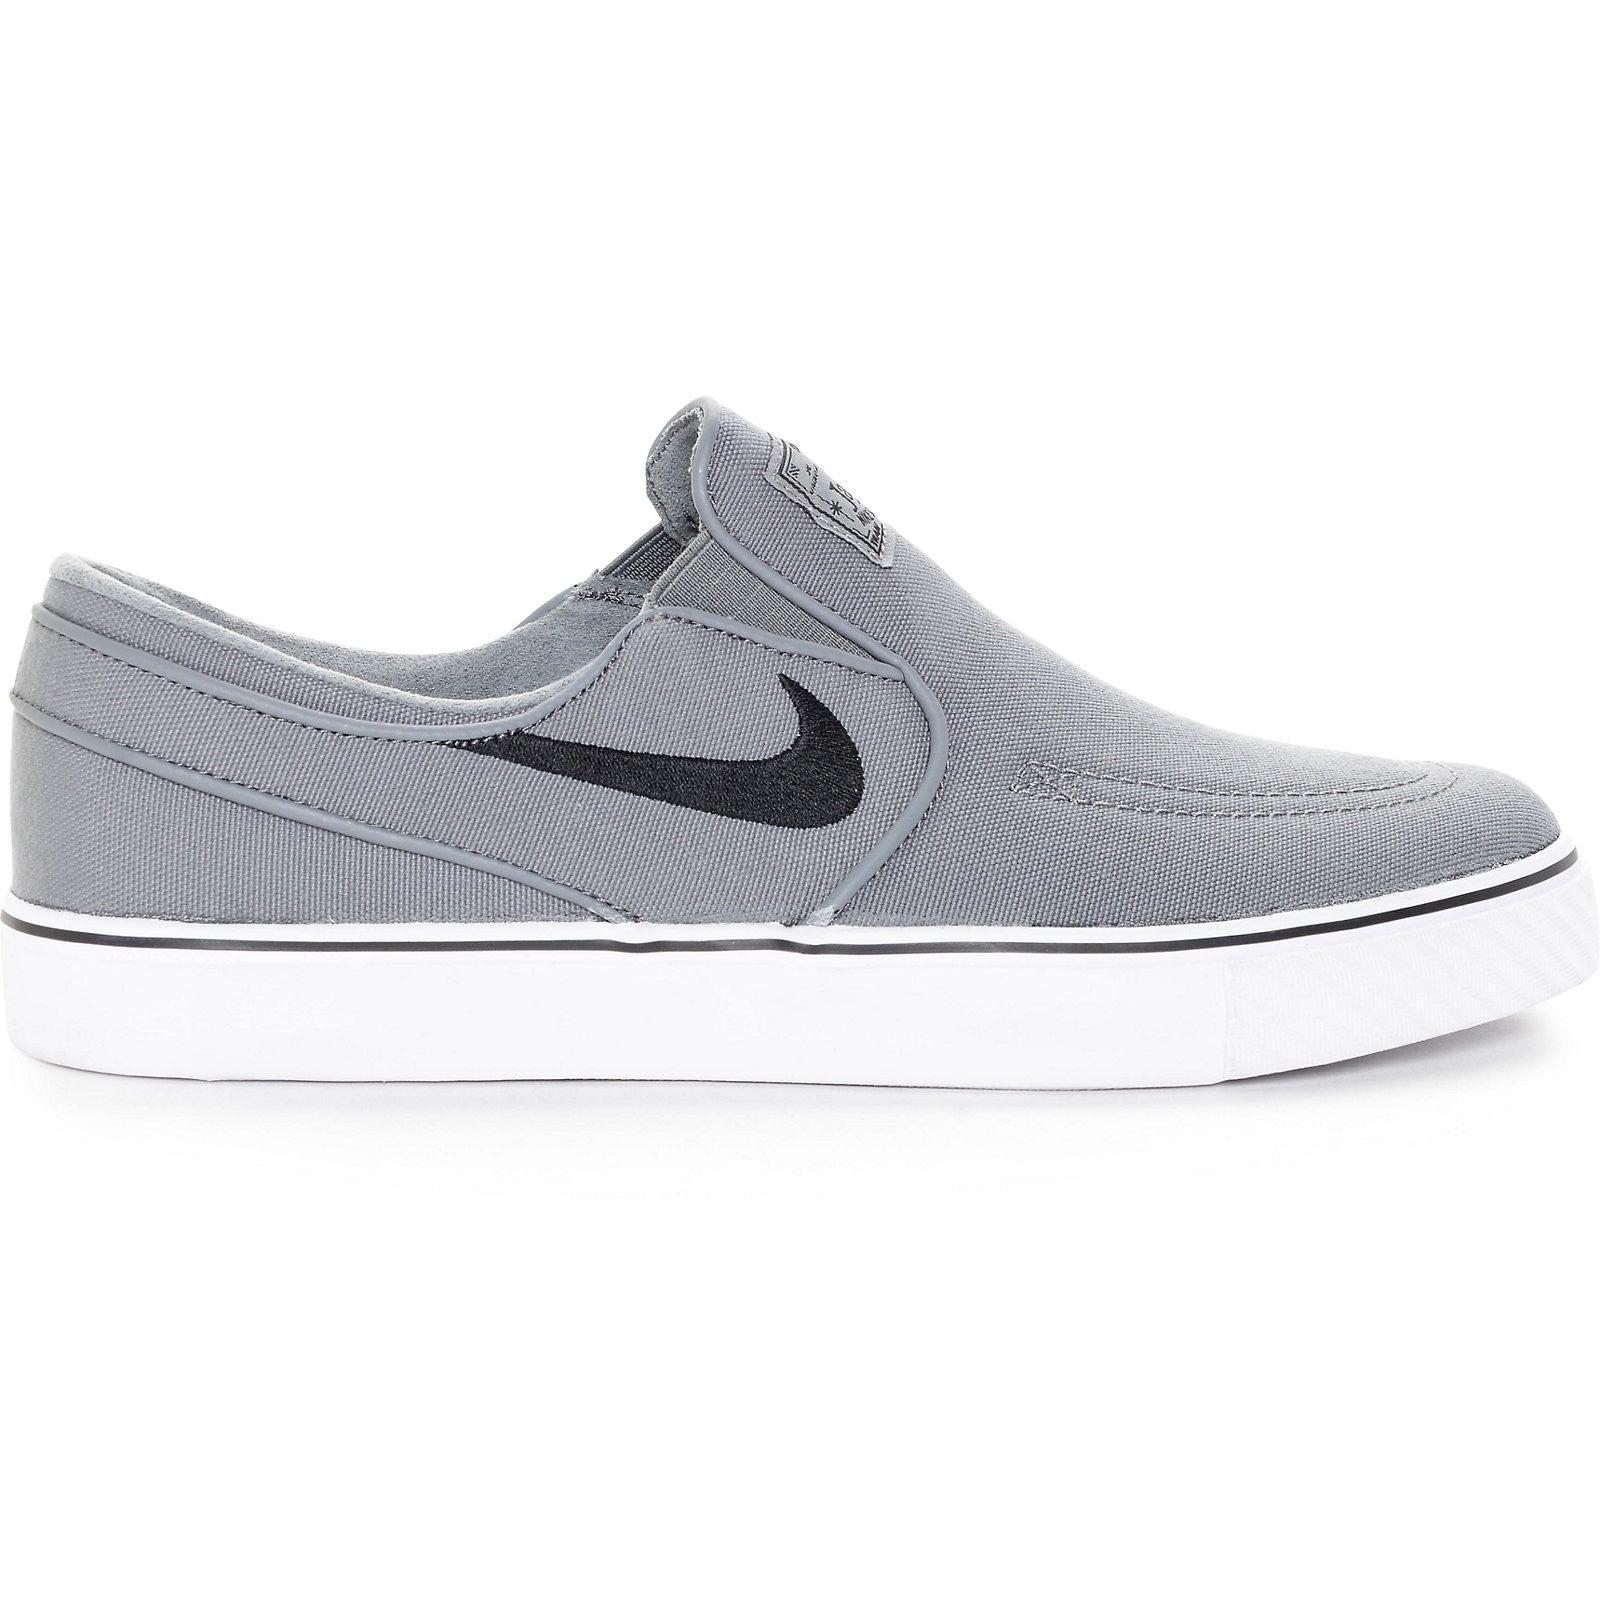 Nike SB Janoski Slip-On - Cool Grey/Black/White - New Star